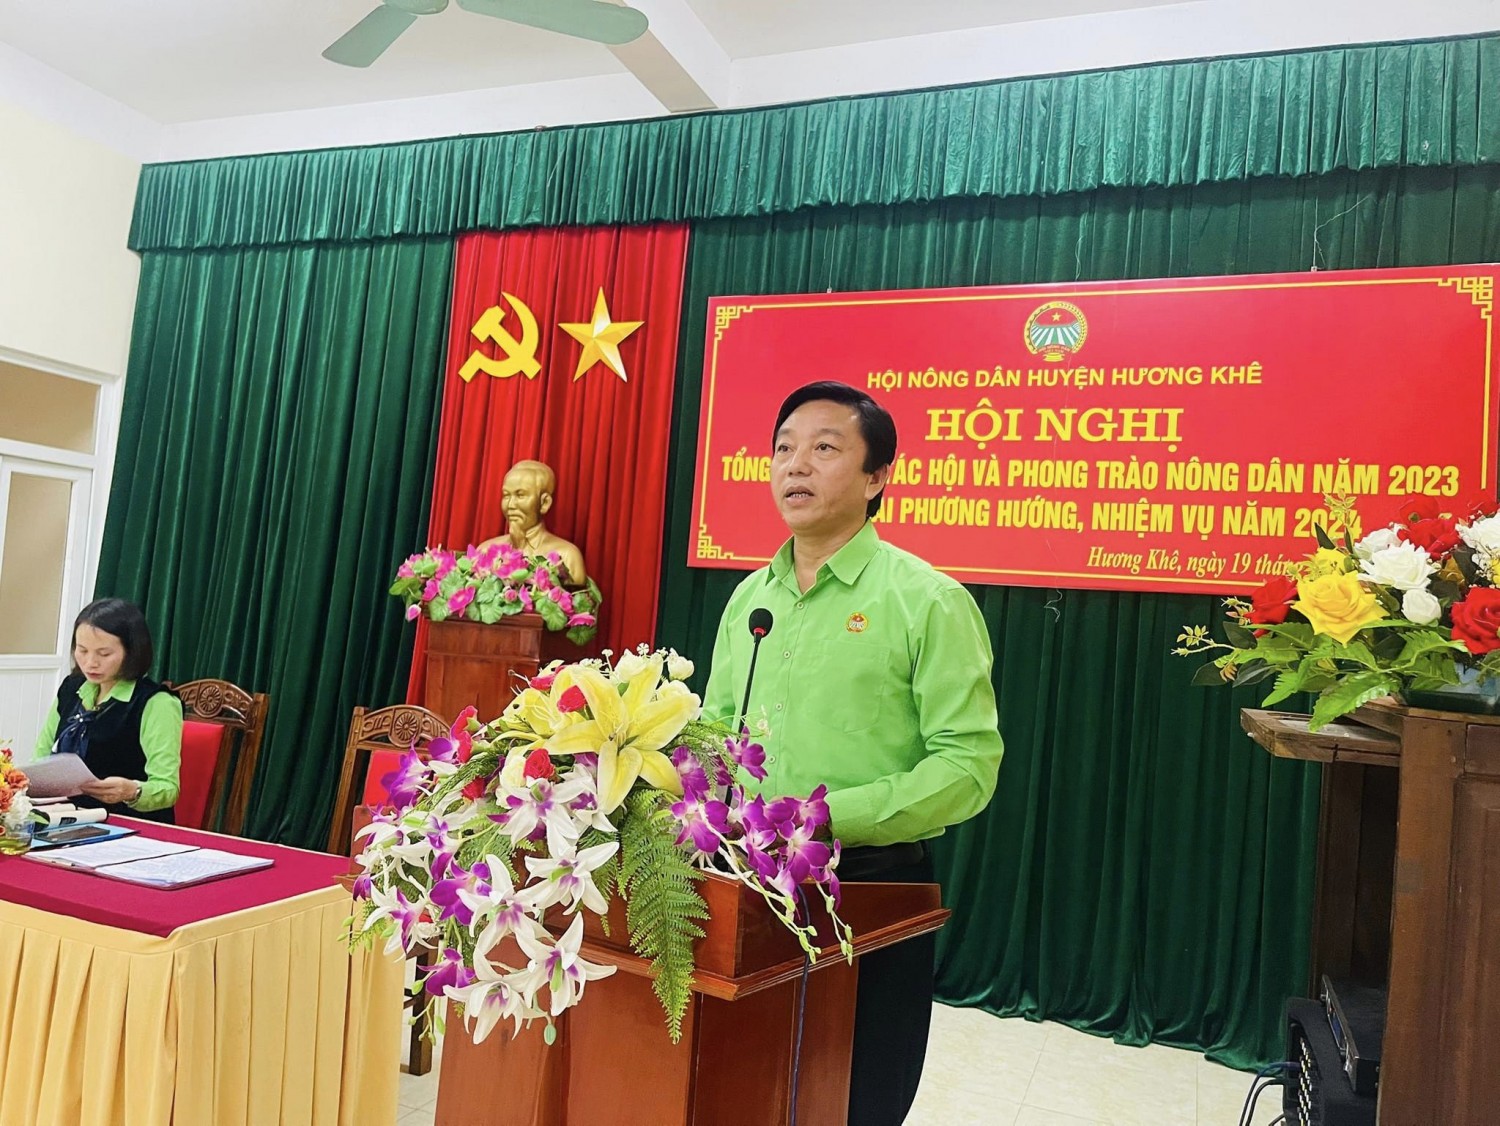 Đồng chí Đinh Công Tịu - HUV, Chủ tịch Hội Nông dân huyện khai mạc